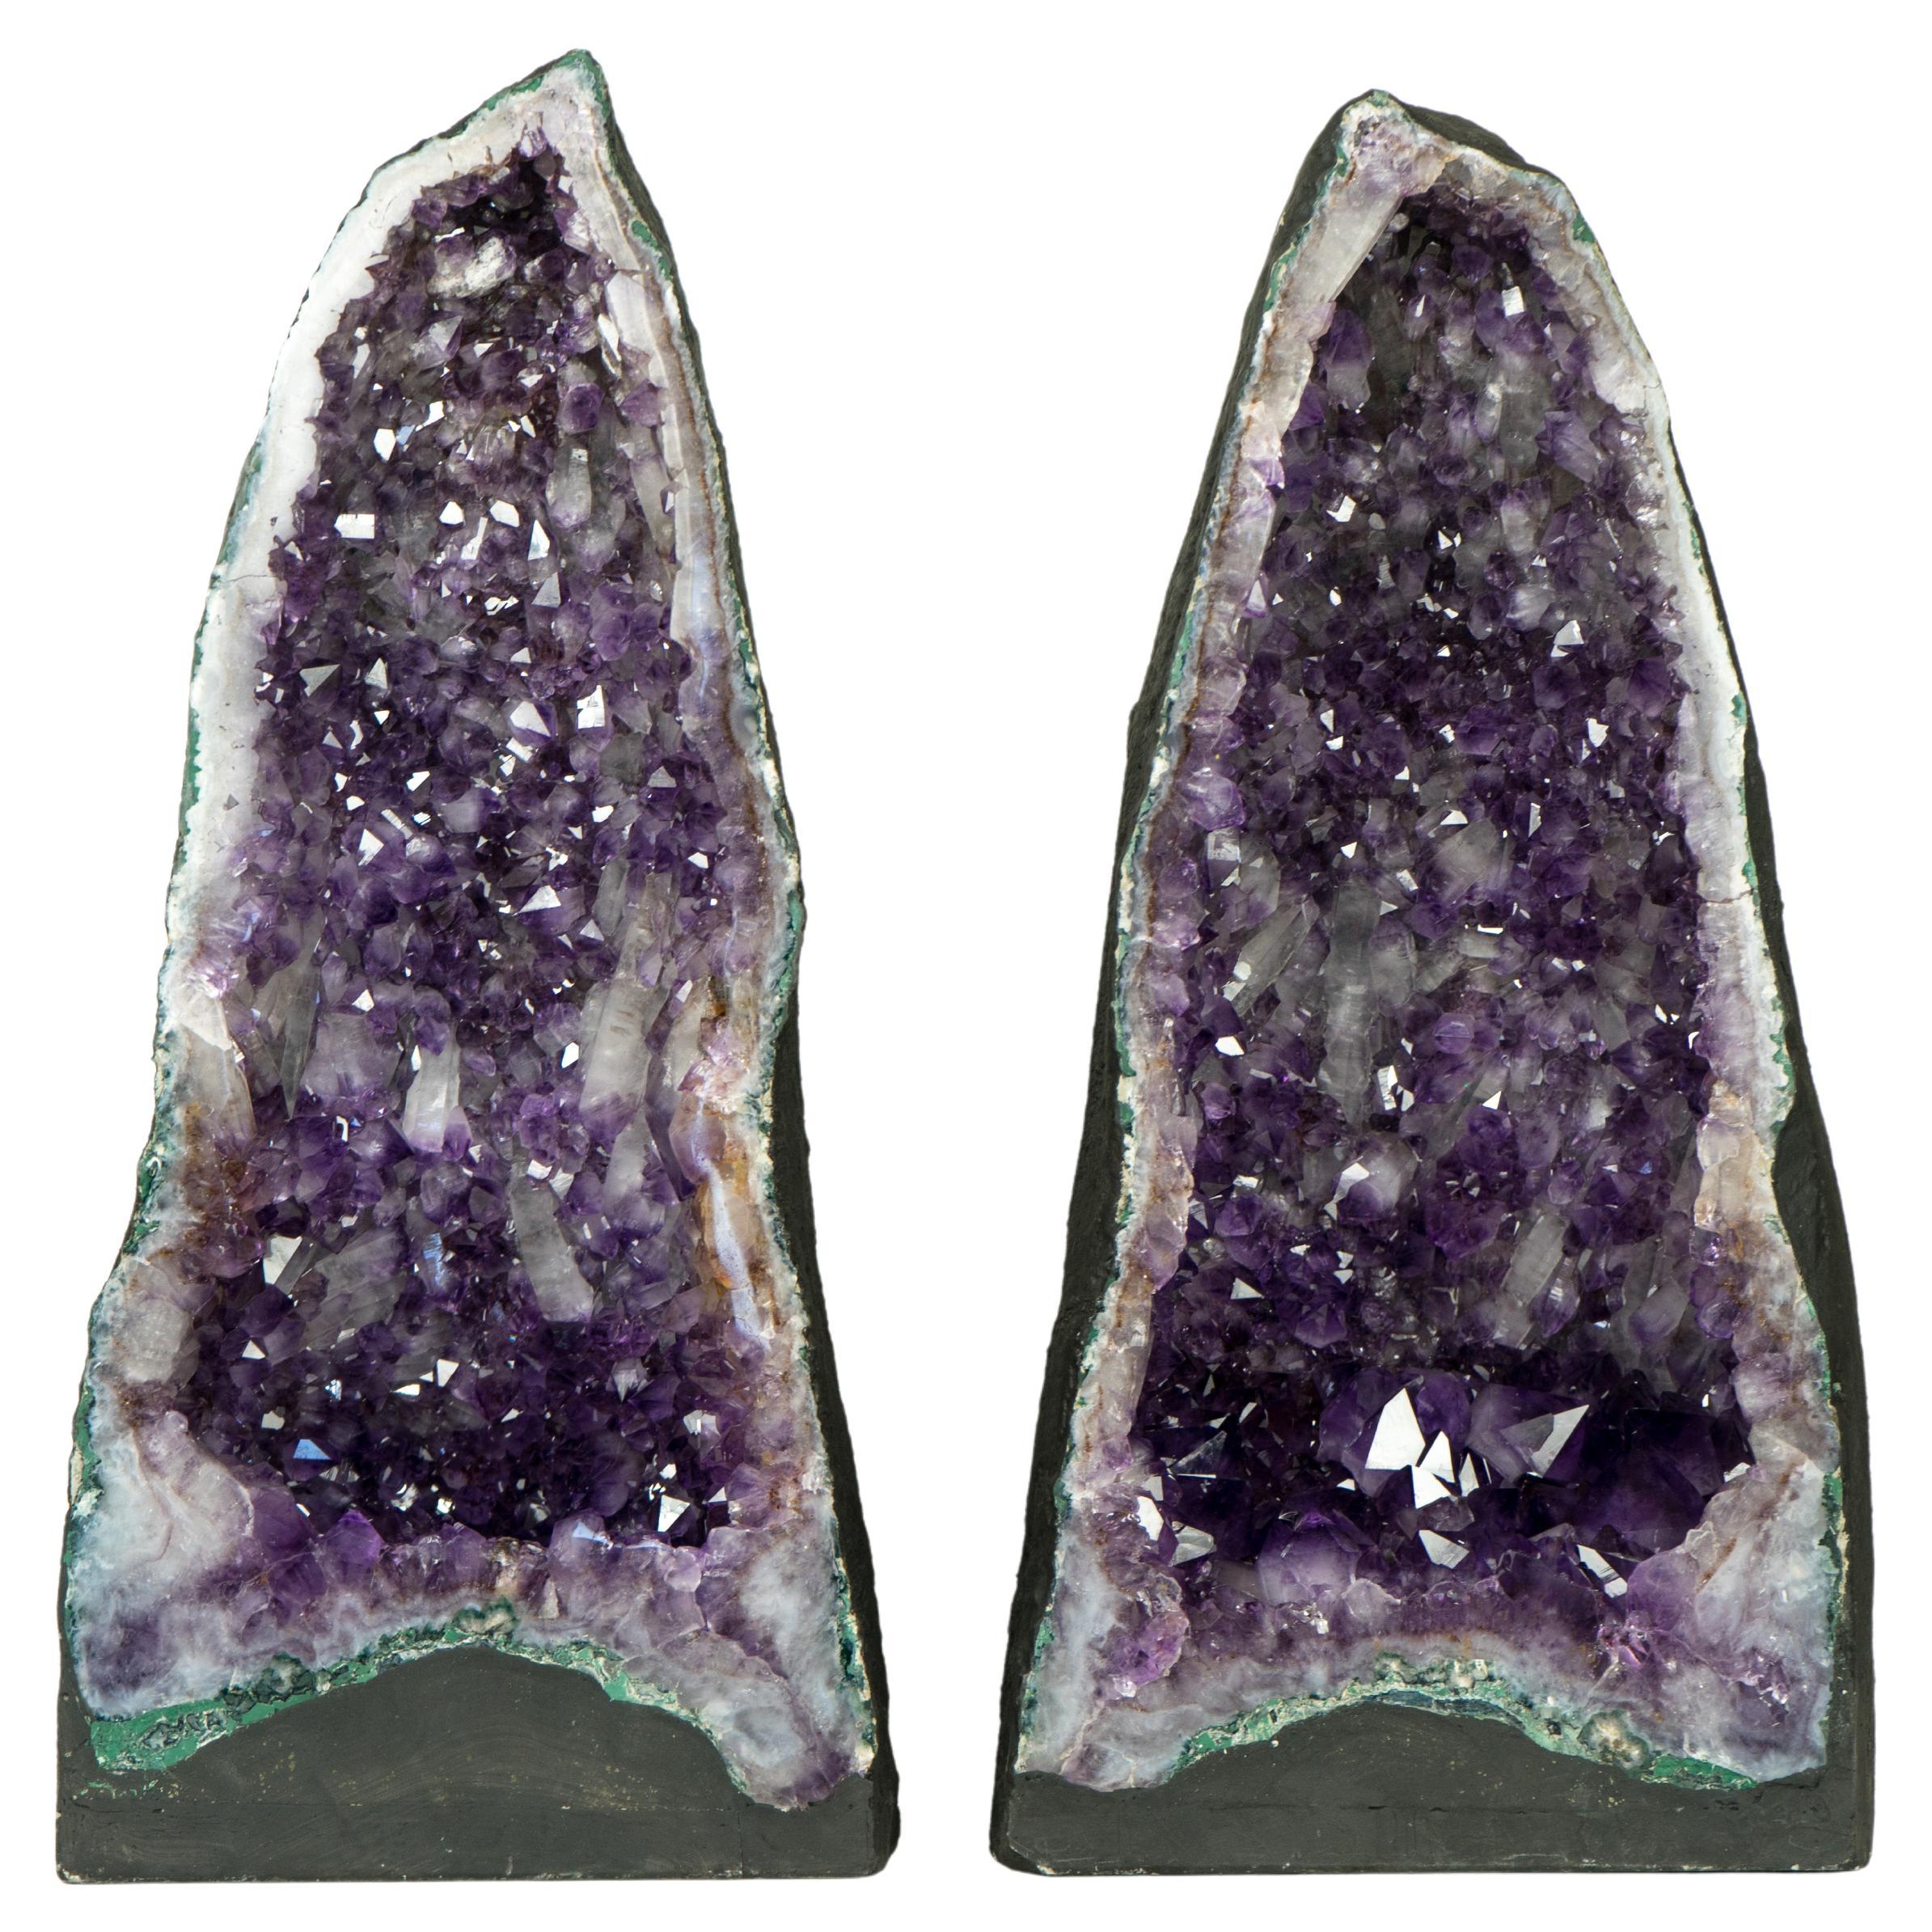 Paire de hautes cathédrales géométriques en cristal d'améthyste violet profond, avec Druzy rare